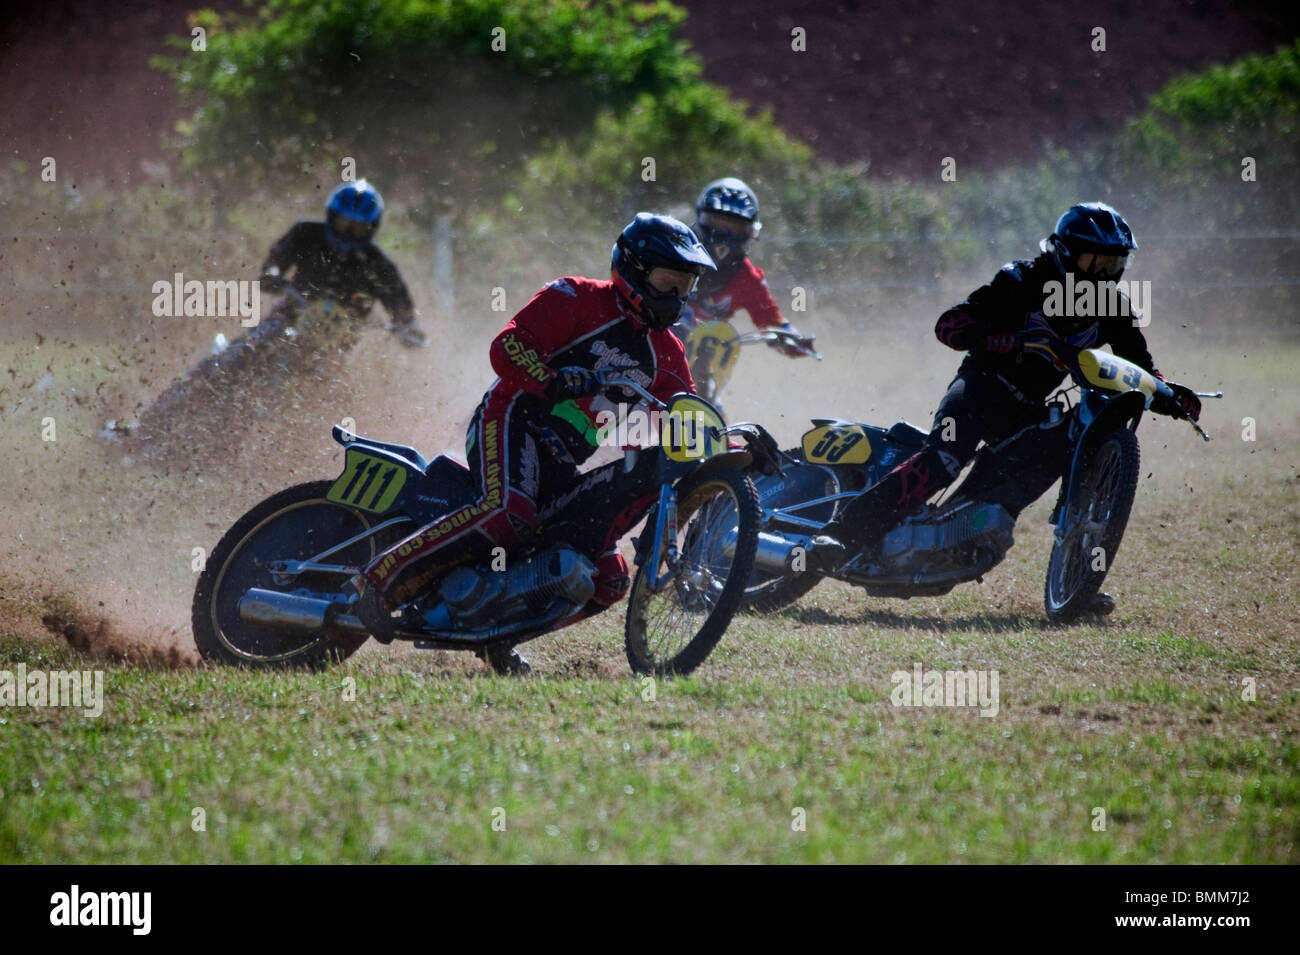 MCC Ledbury grasstrack raza. Cuatro carreras de motocicletas en un campo. Pista de césped 4 motos, plana durante una carrera. Foto de stock